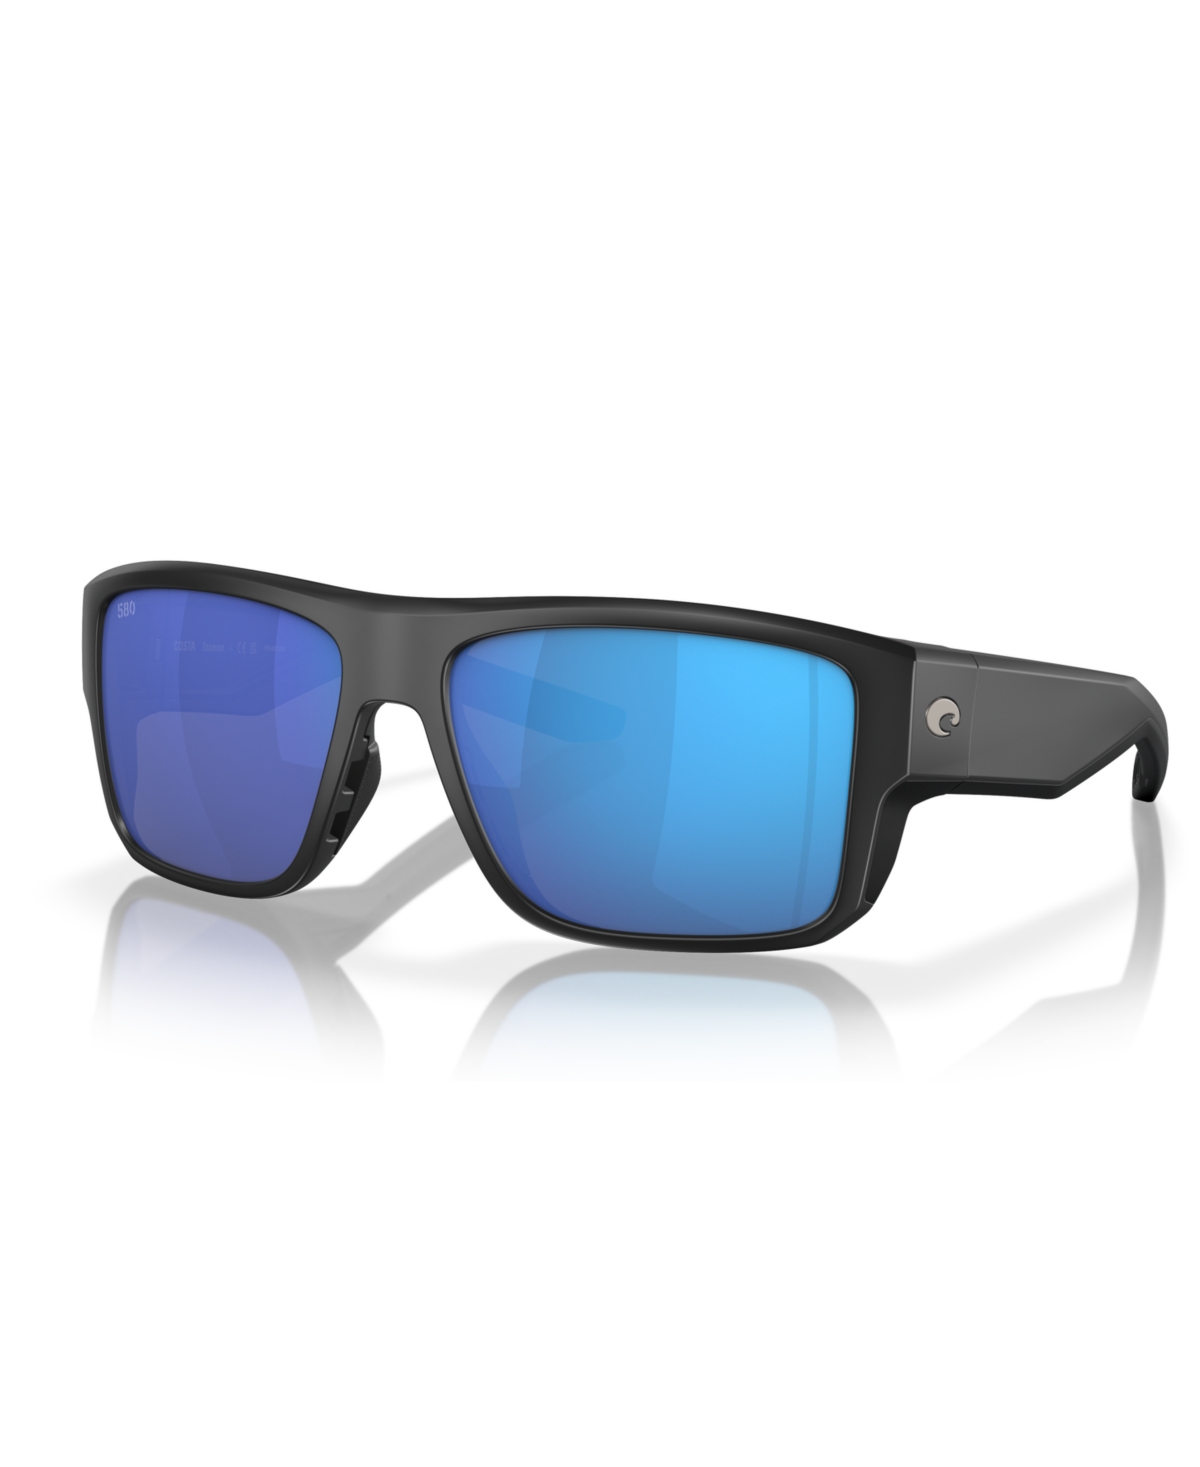 Men's Polarized Sunglasses, Taxman 6S9116 - Matte Black, Blue